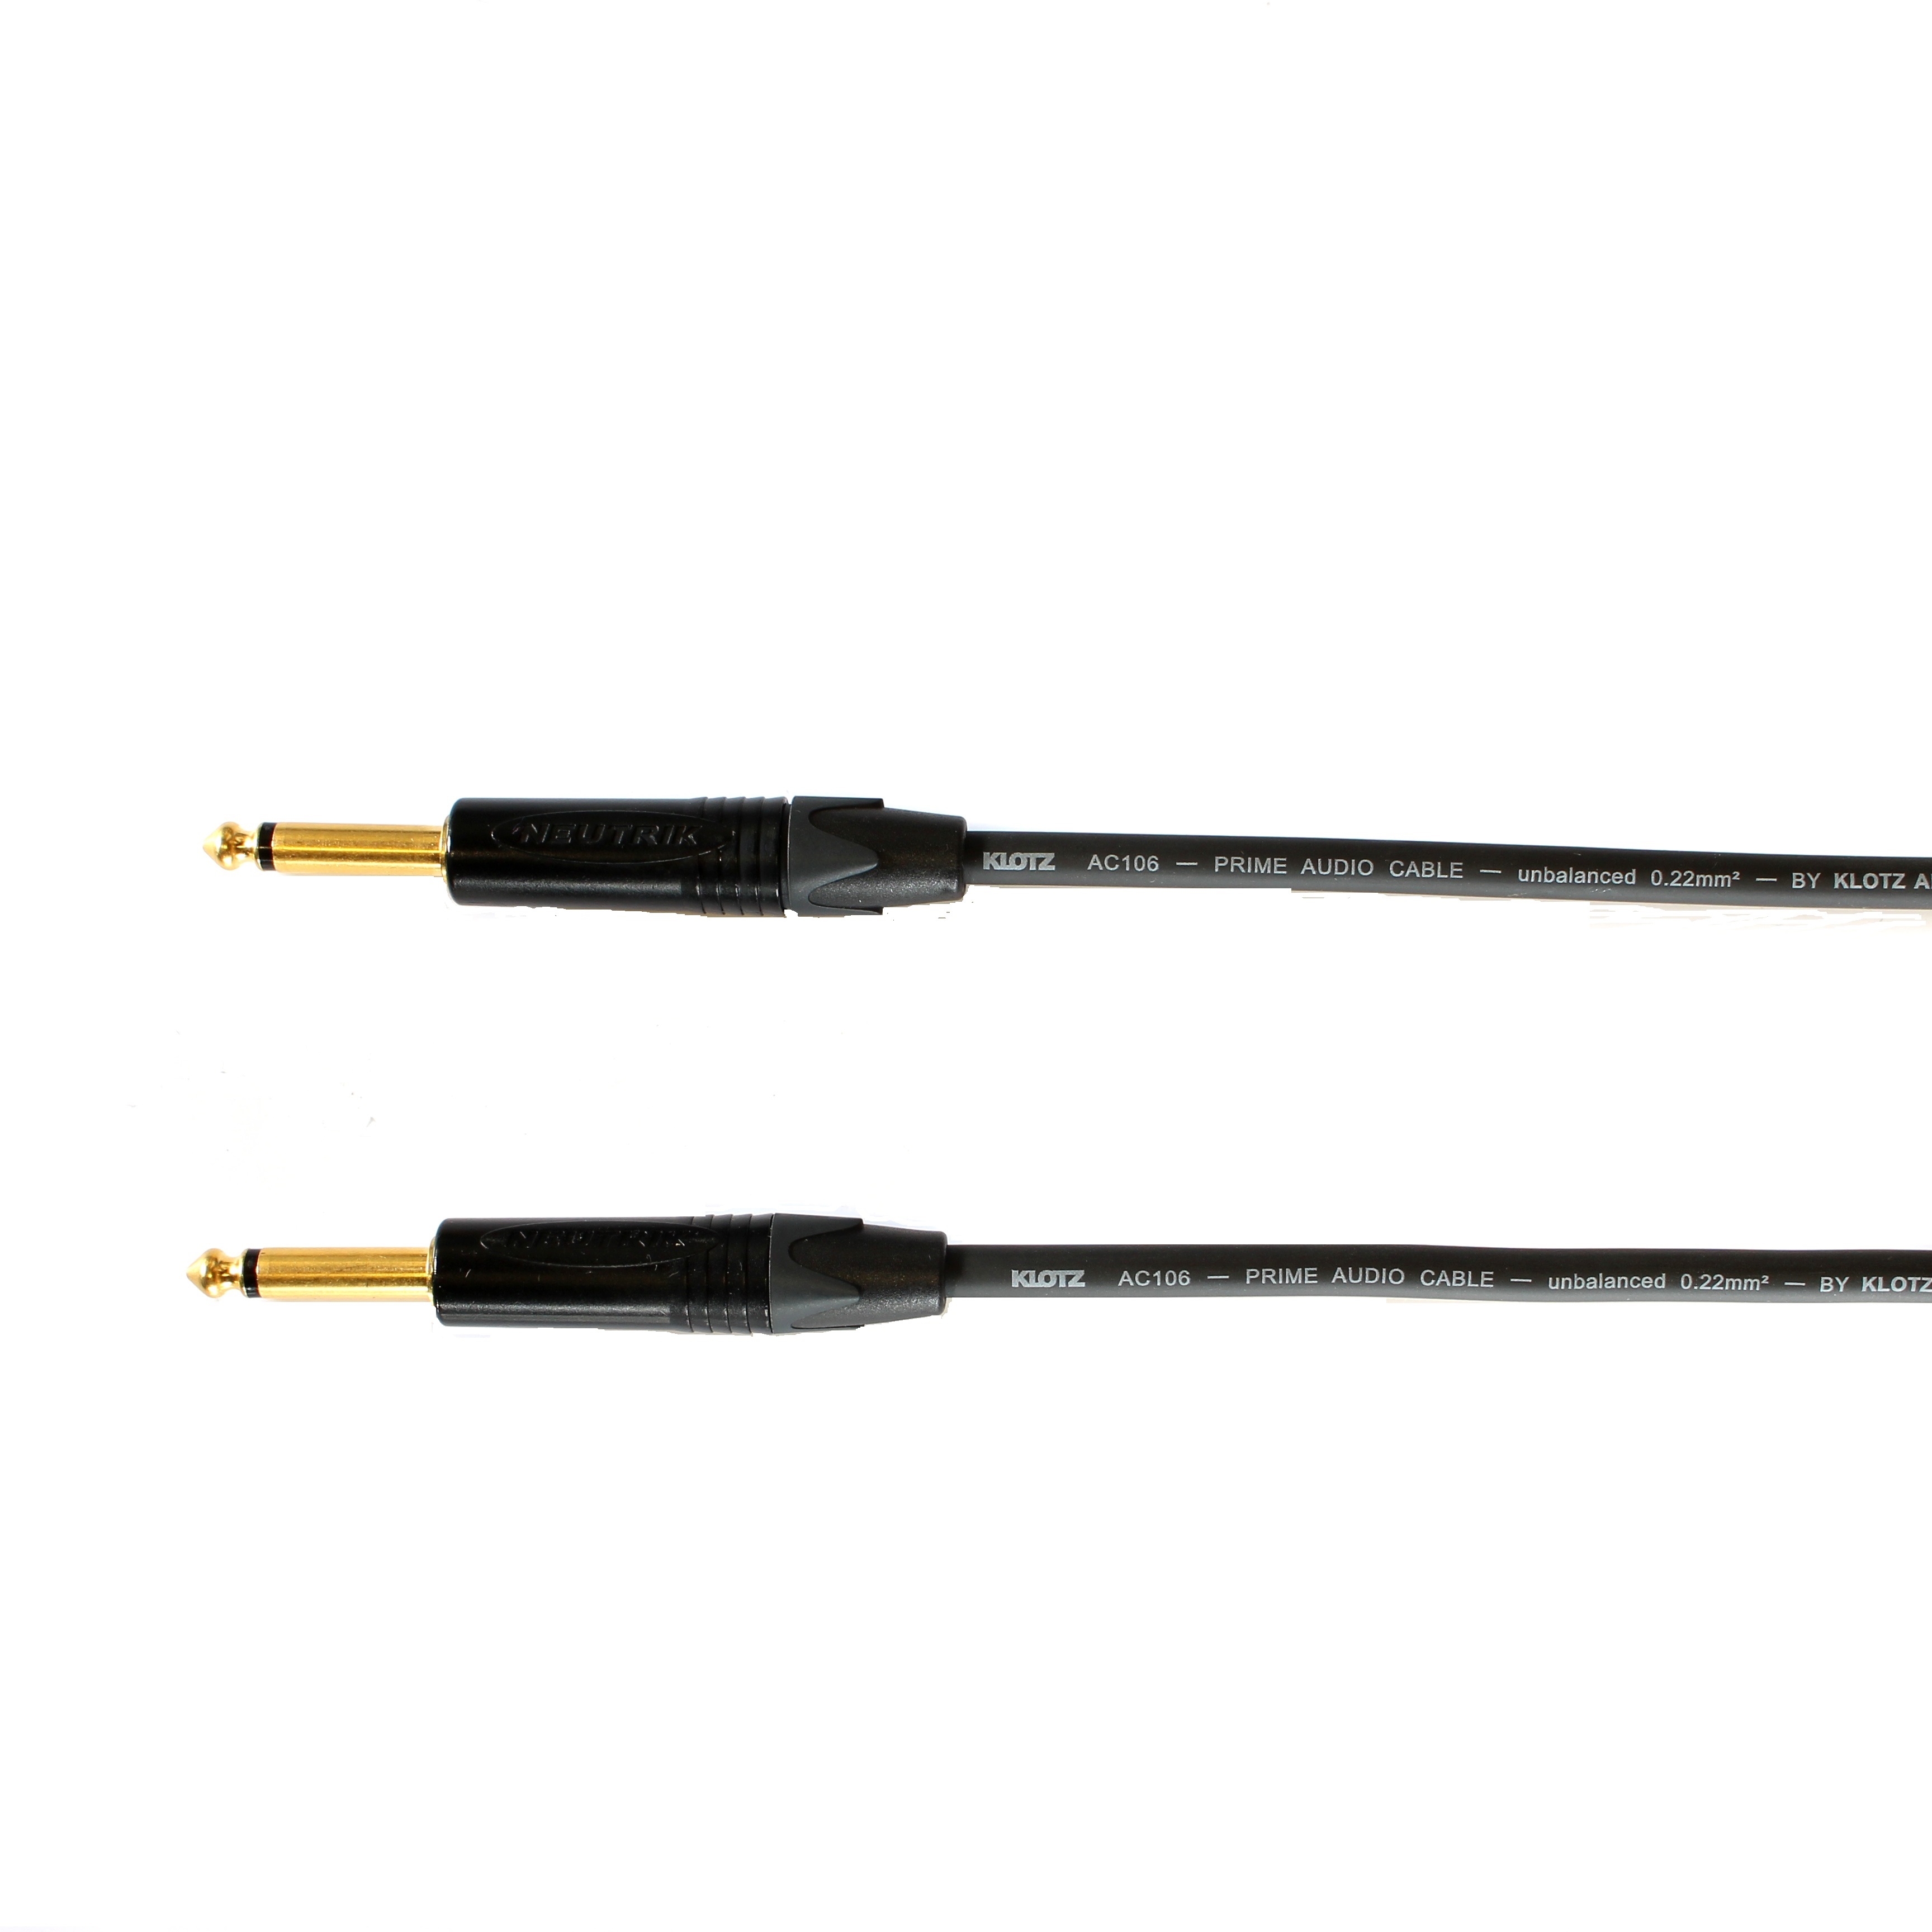 Kytarový kabel Jack 6,3 mono přímý/ Jack 6,3 mono přímý, 2 m, AC106